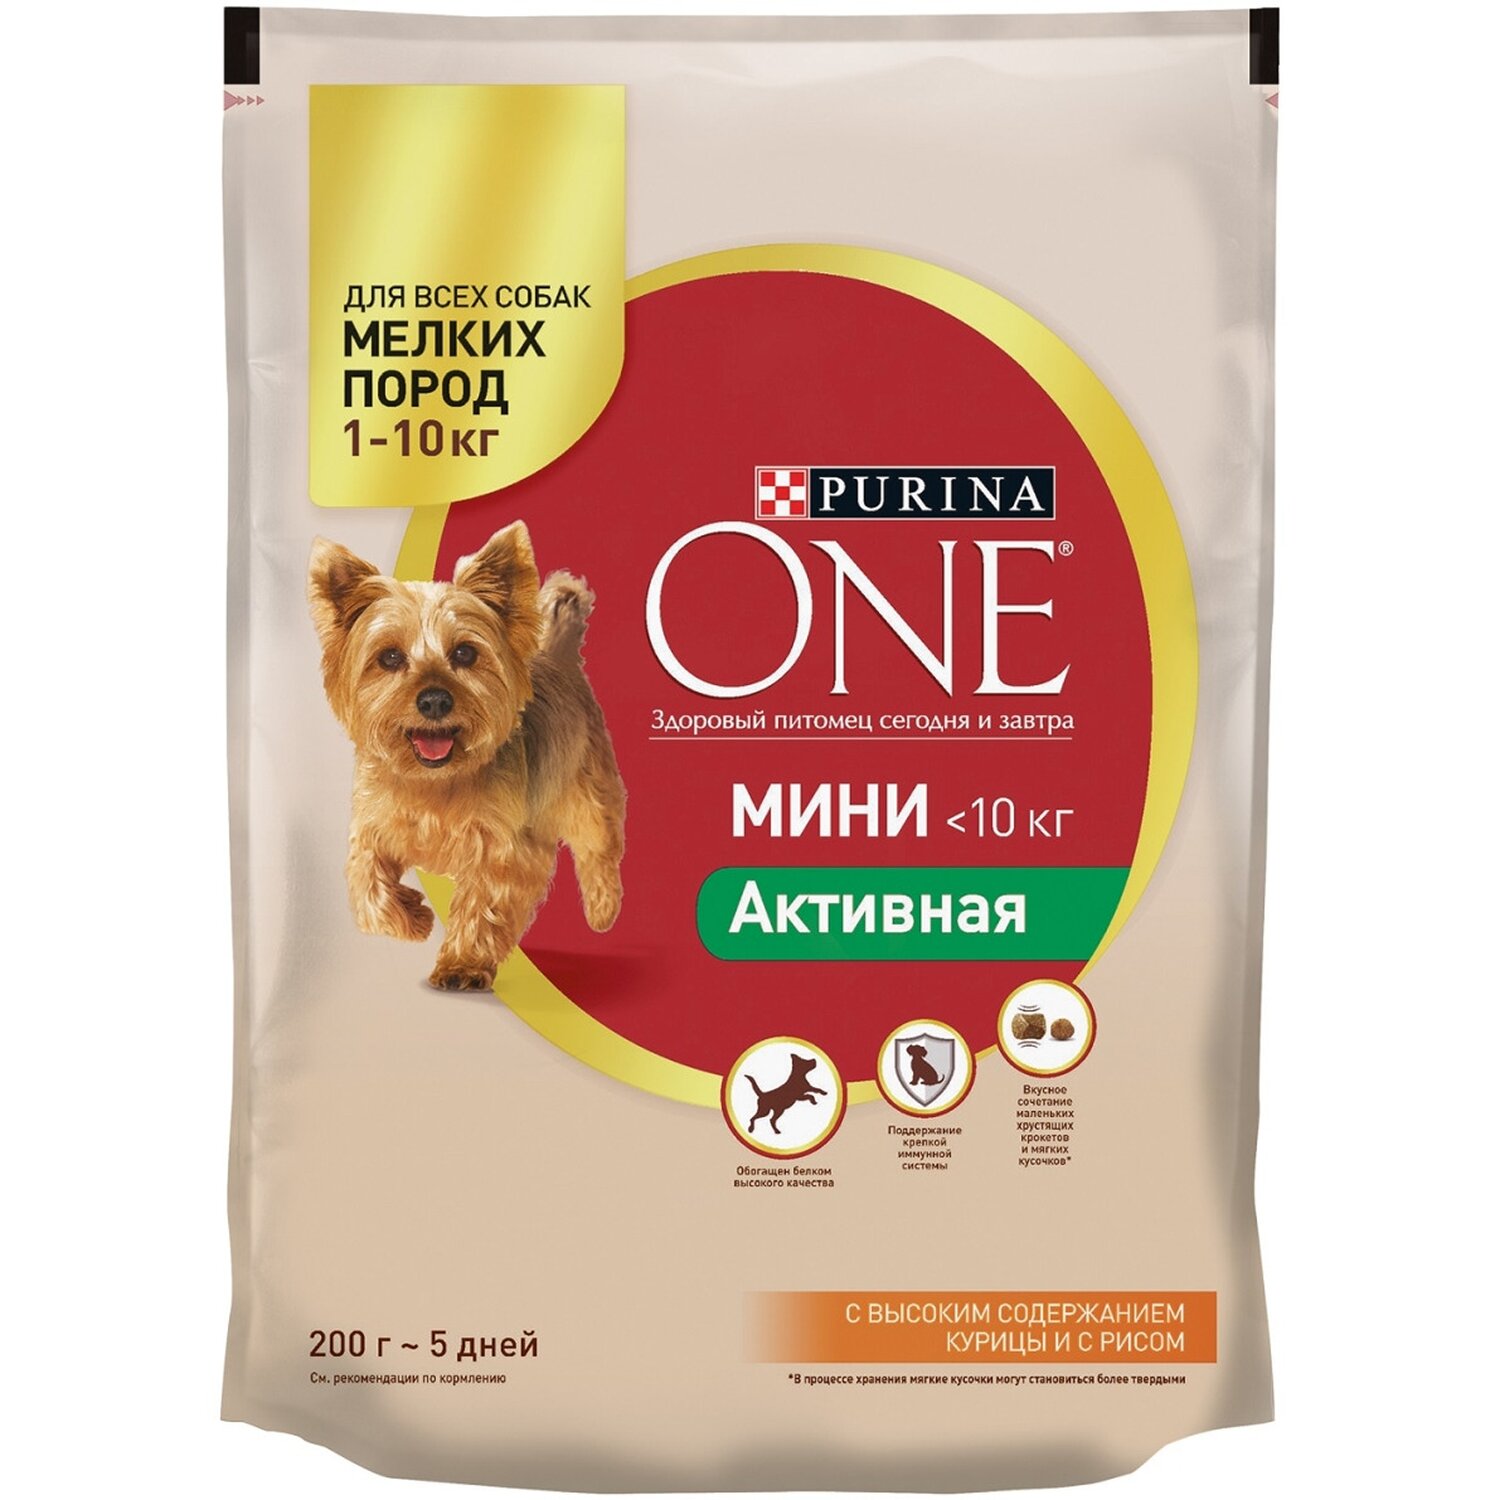 One Only (Оне Онли): корм для собак и щенков